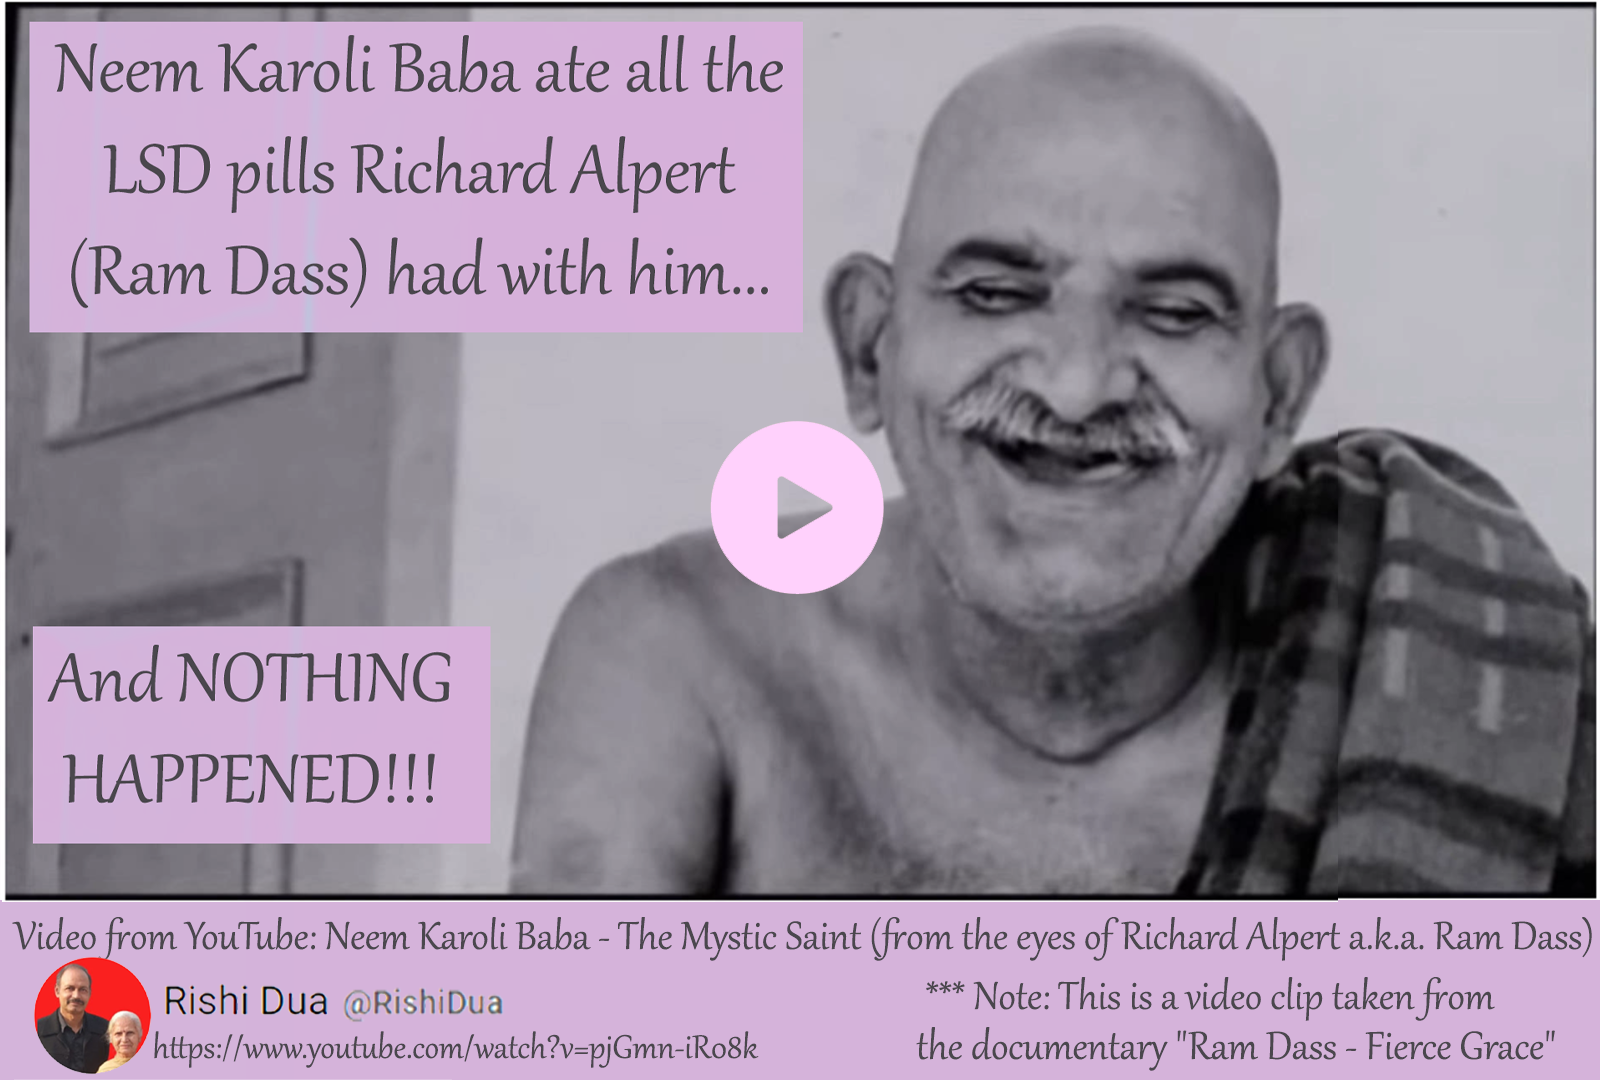 Ram Dass on Neem Karoli Baba eating LSD